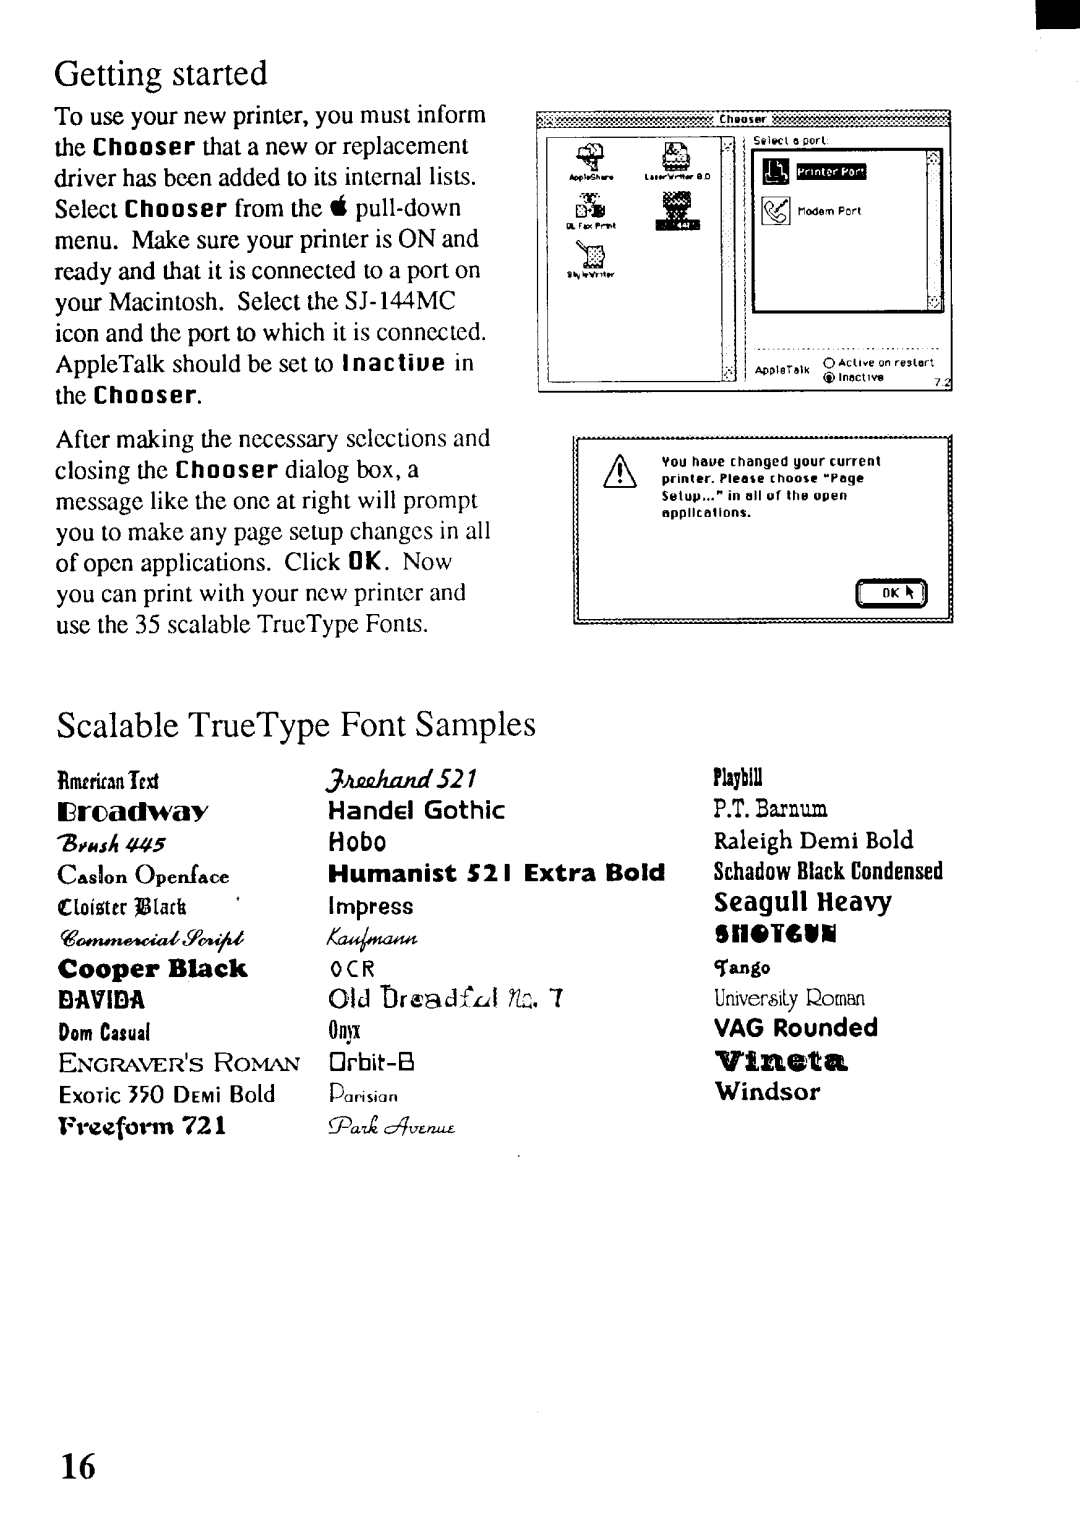 Star Micronics SJ-144MC user manual 